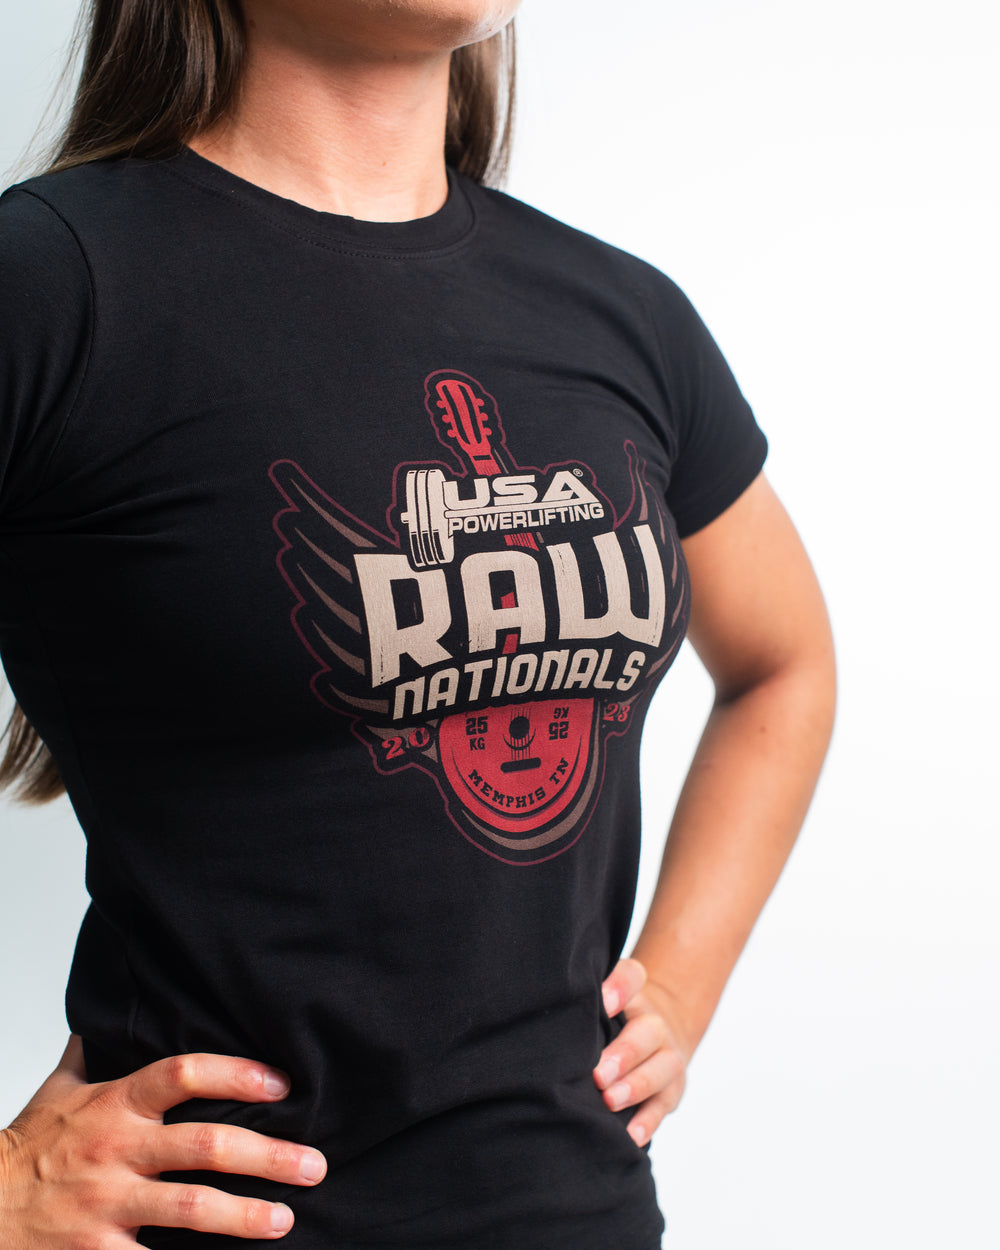 2023 USAPL Raw Nationals Women's Shirt - A7